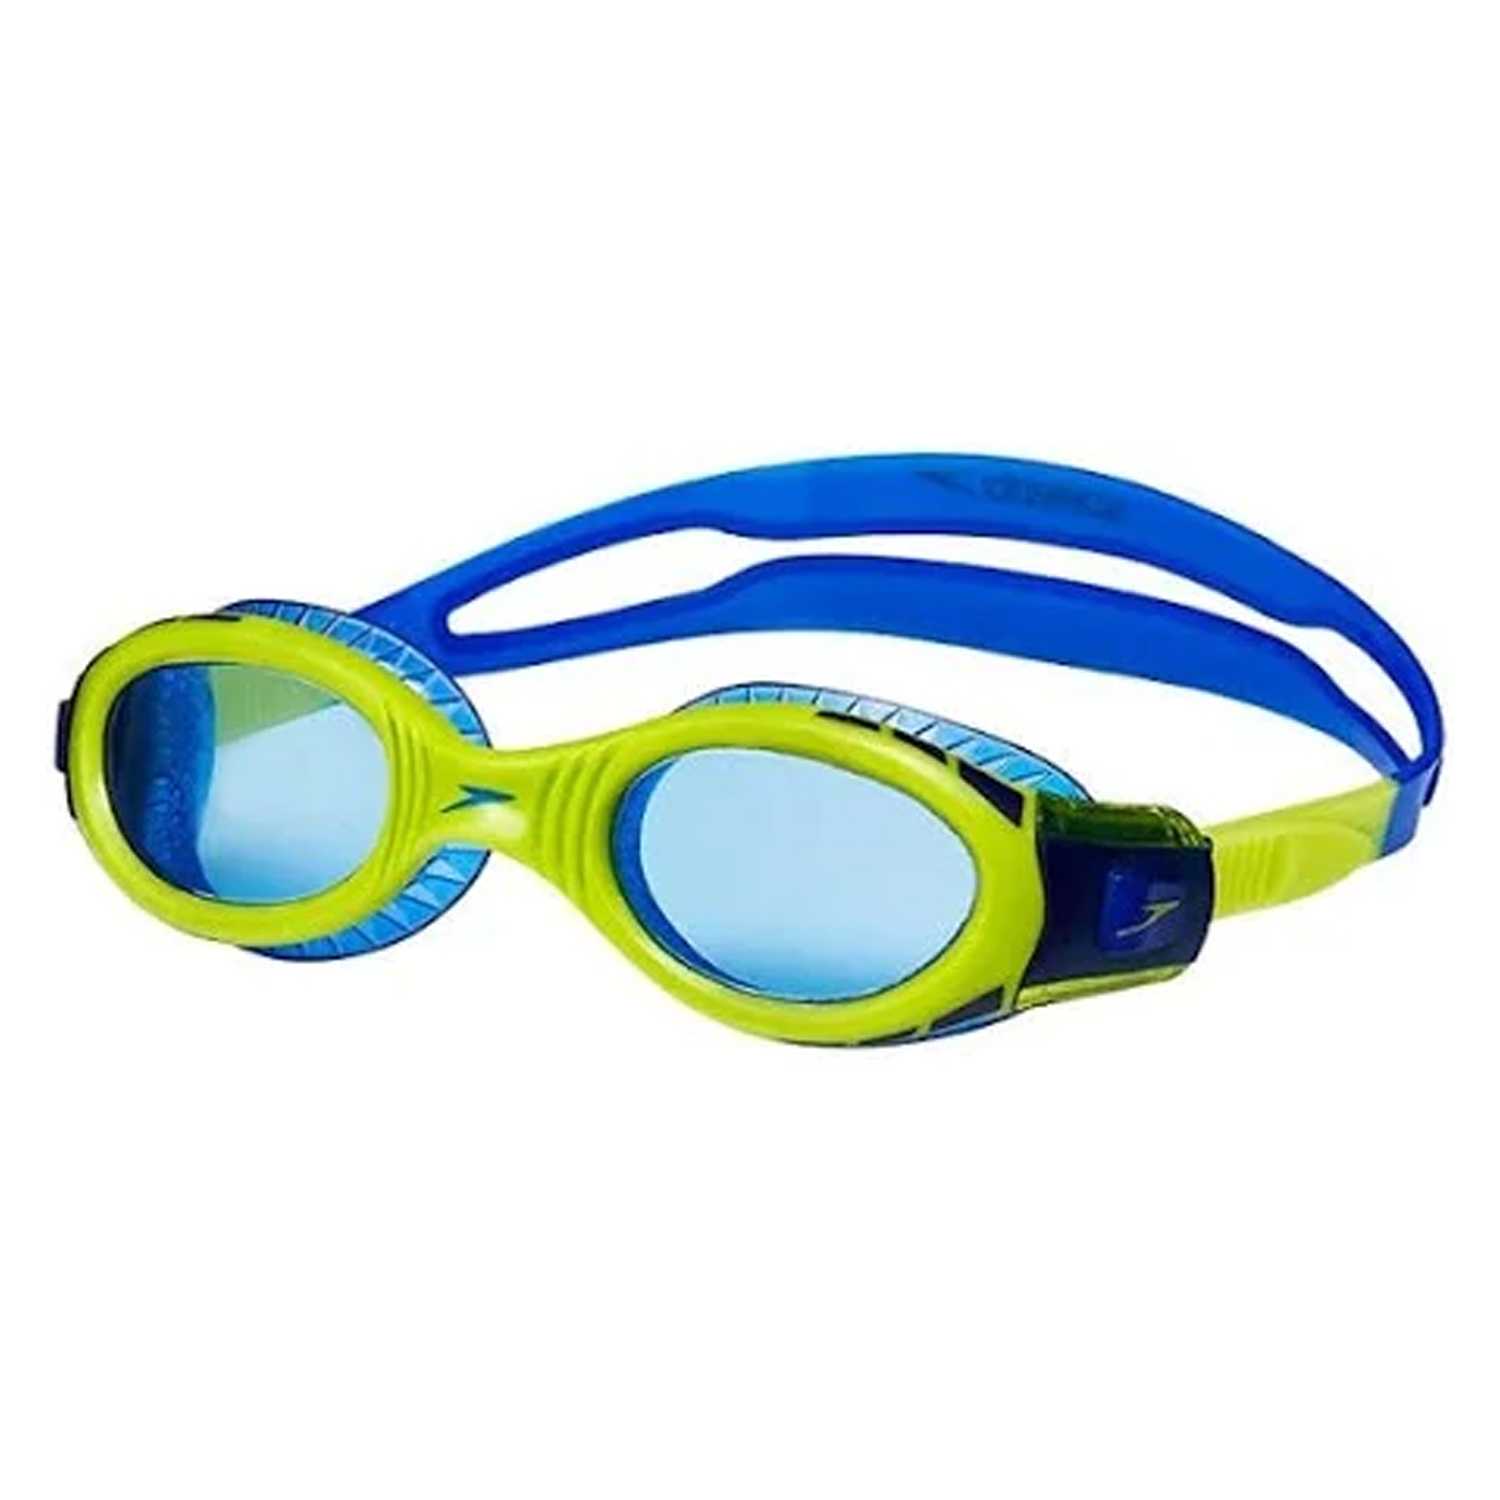 Speedo Future Biofuse Flexiseal Çocuk Yüzücü Gözlüğü - LACİVERT - 1